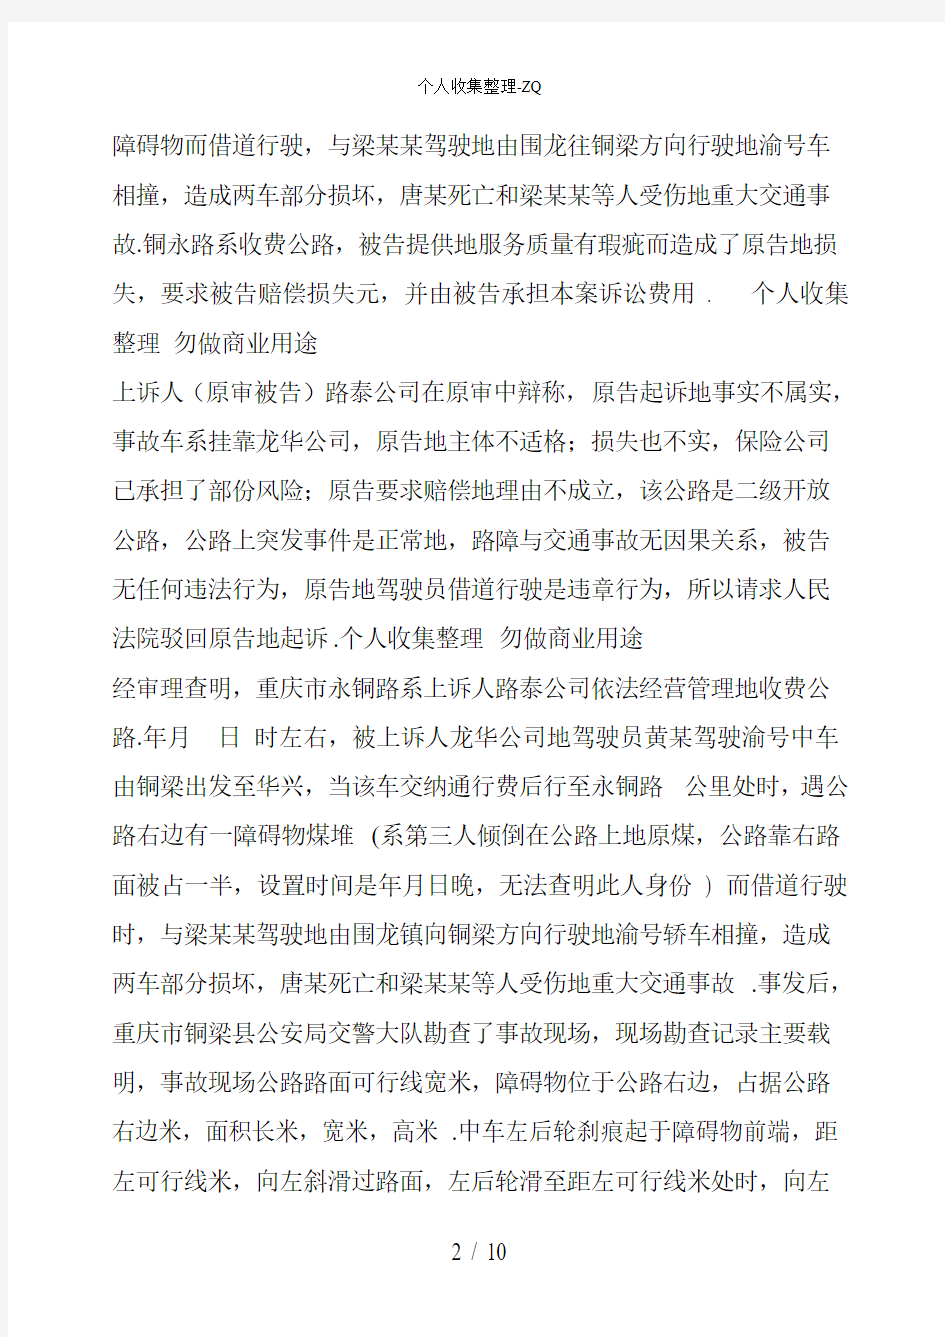 重庆市第一中级人民法院民事判决书渝一中民终字第899号